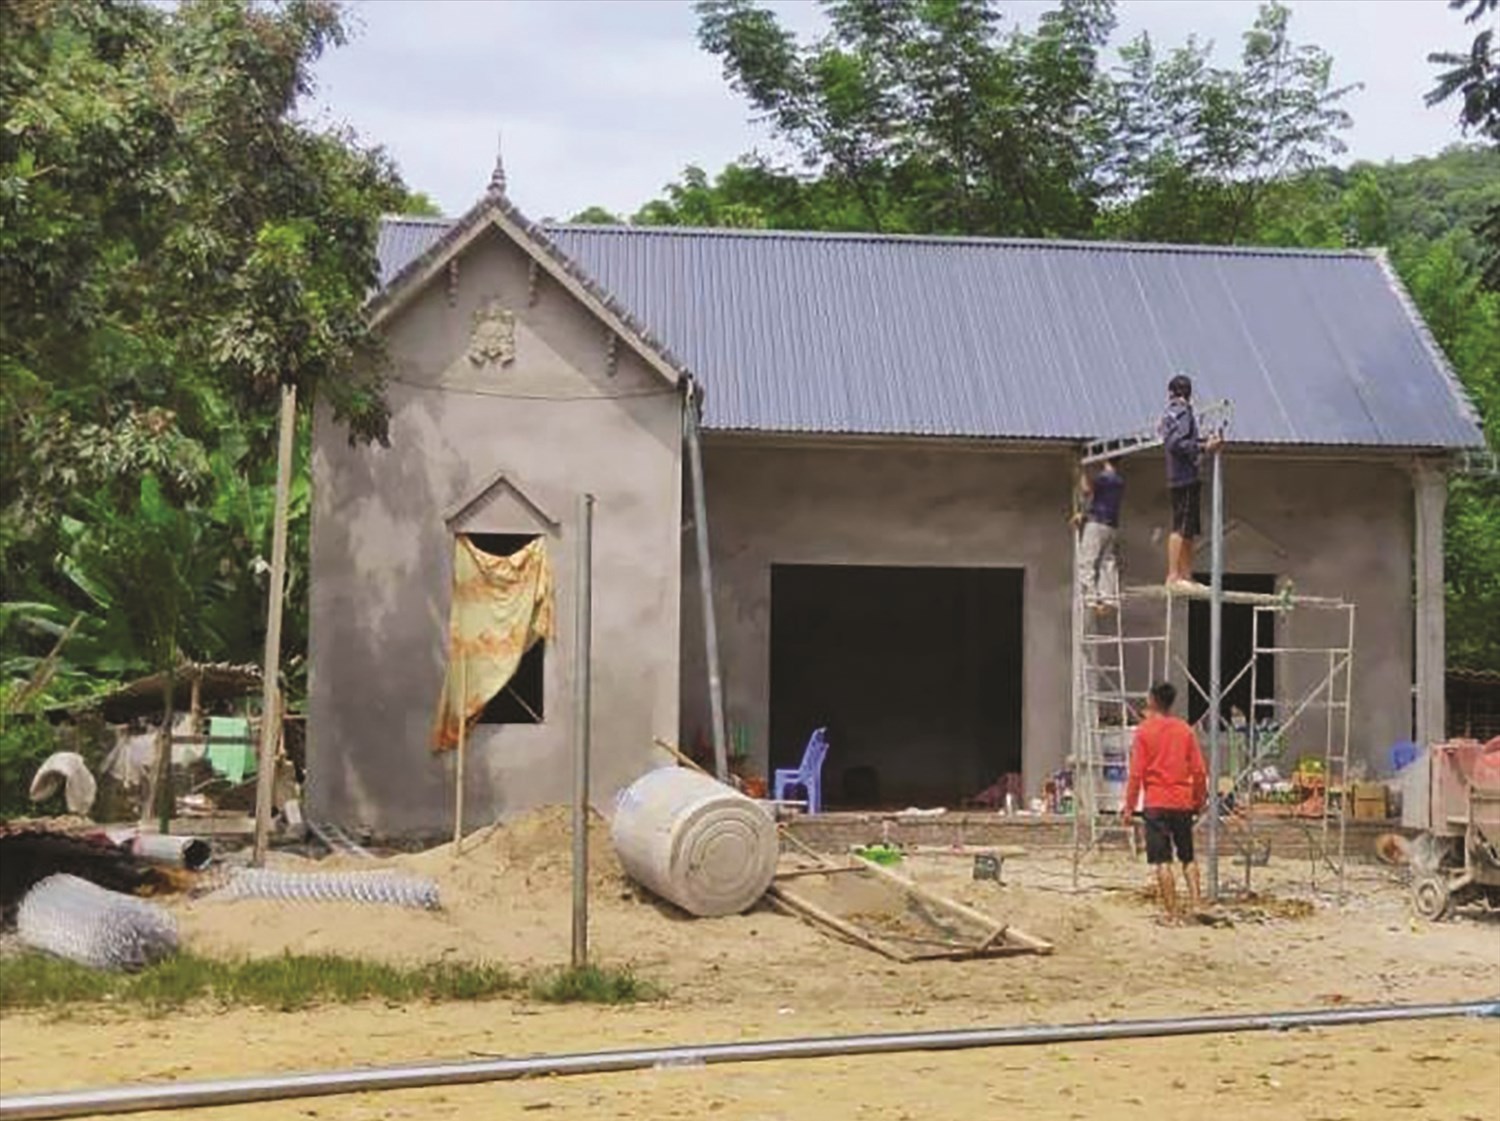 Huyện Quan Sơn đã xây dựng hoàn thành 100 ngôi nhà ở giúp bà con các bản Mông yên tâm sinh hoạt, lao động sản xuất